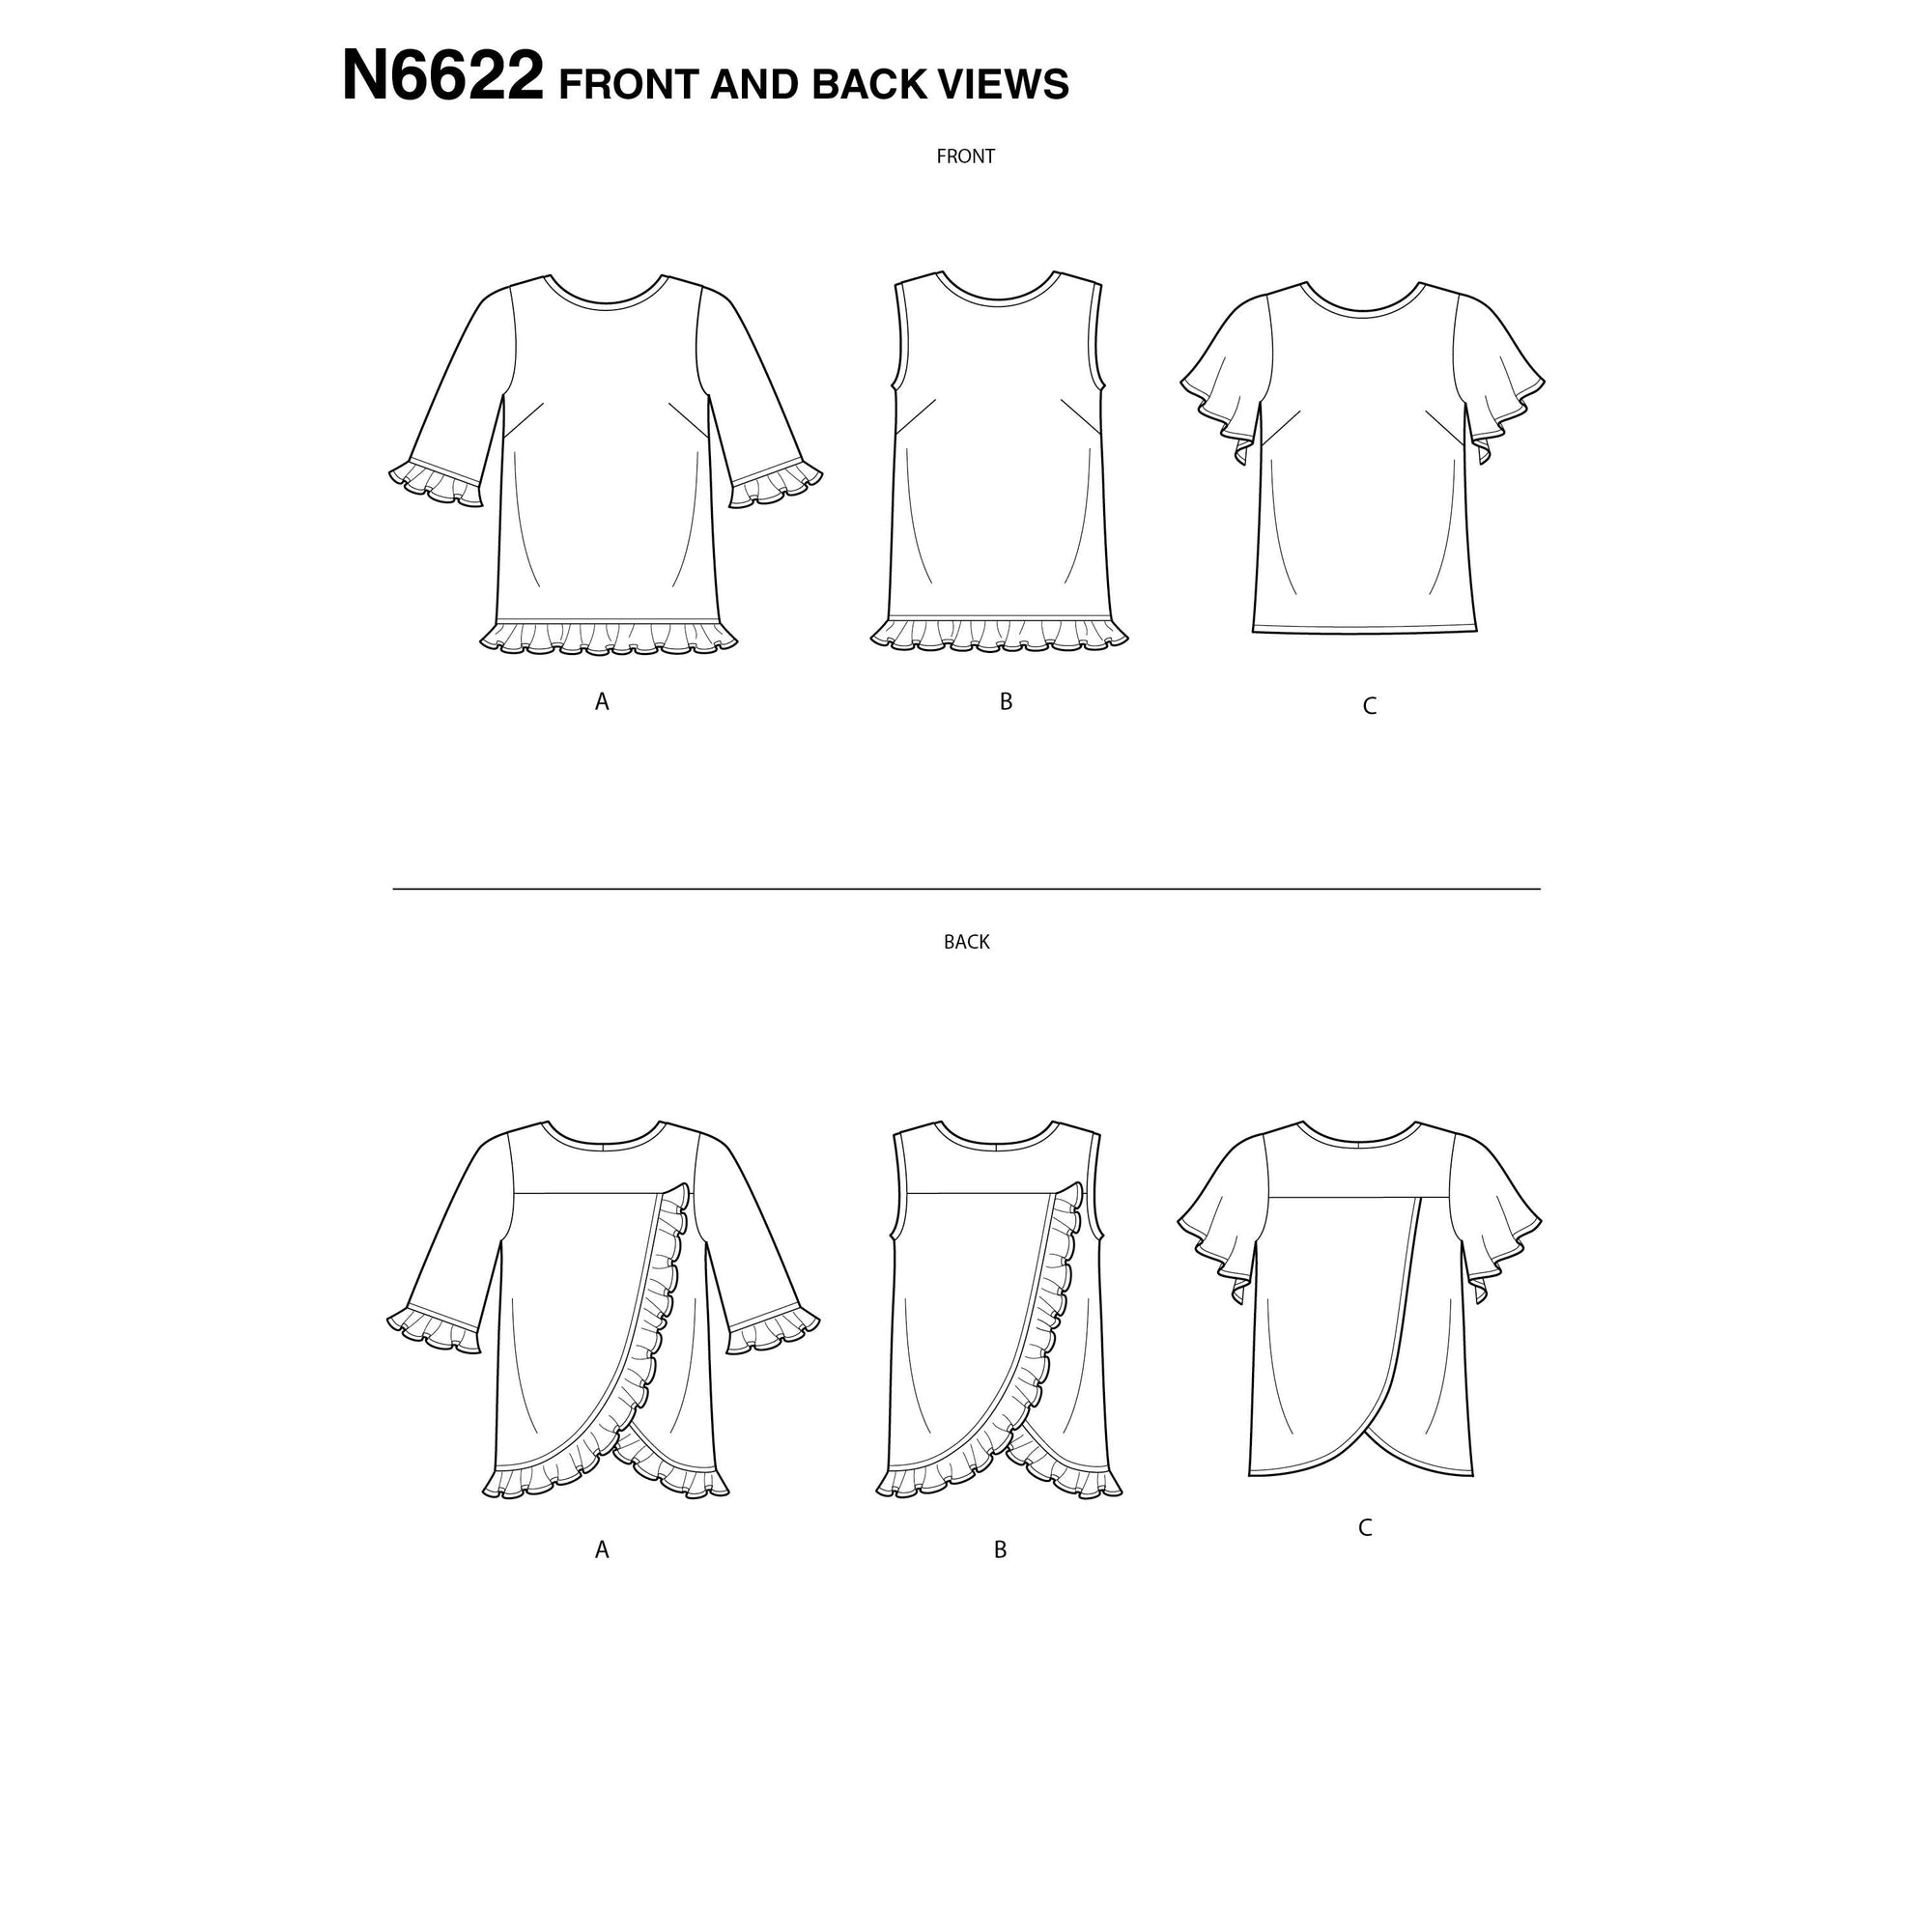 6622 New Look Sewing Pattern N6622 Misses' Tops